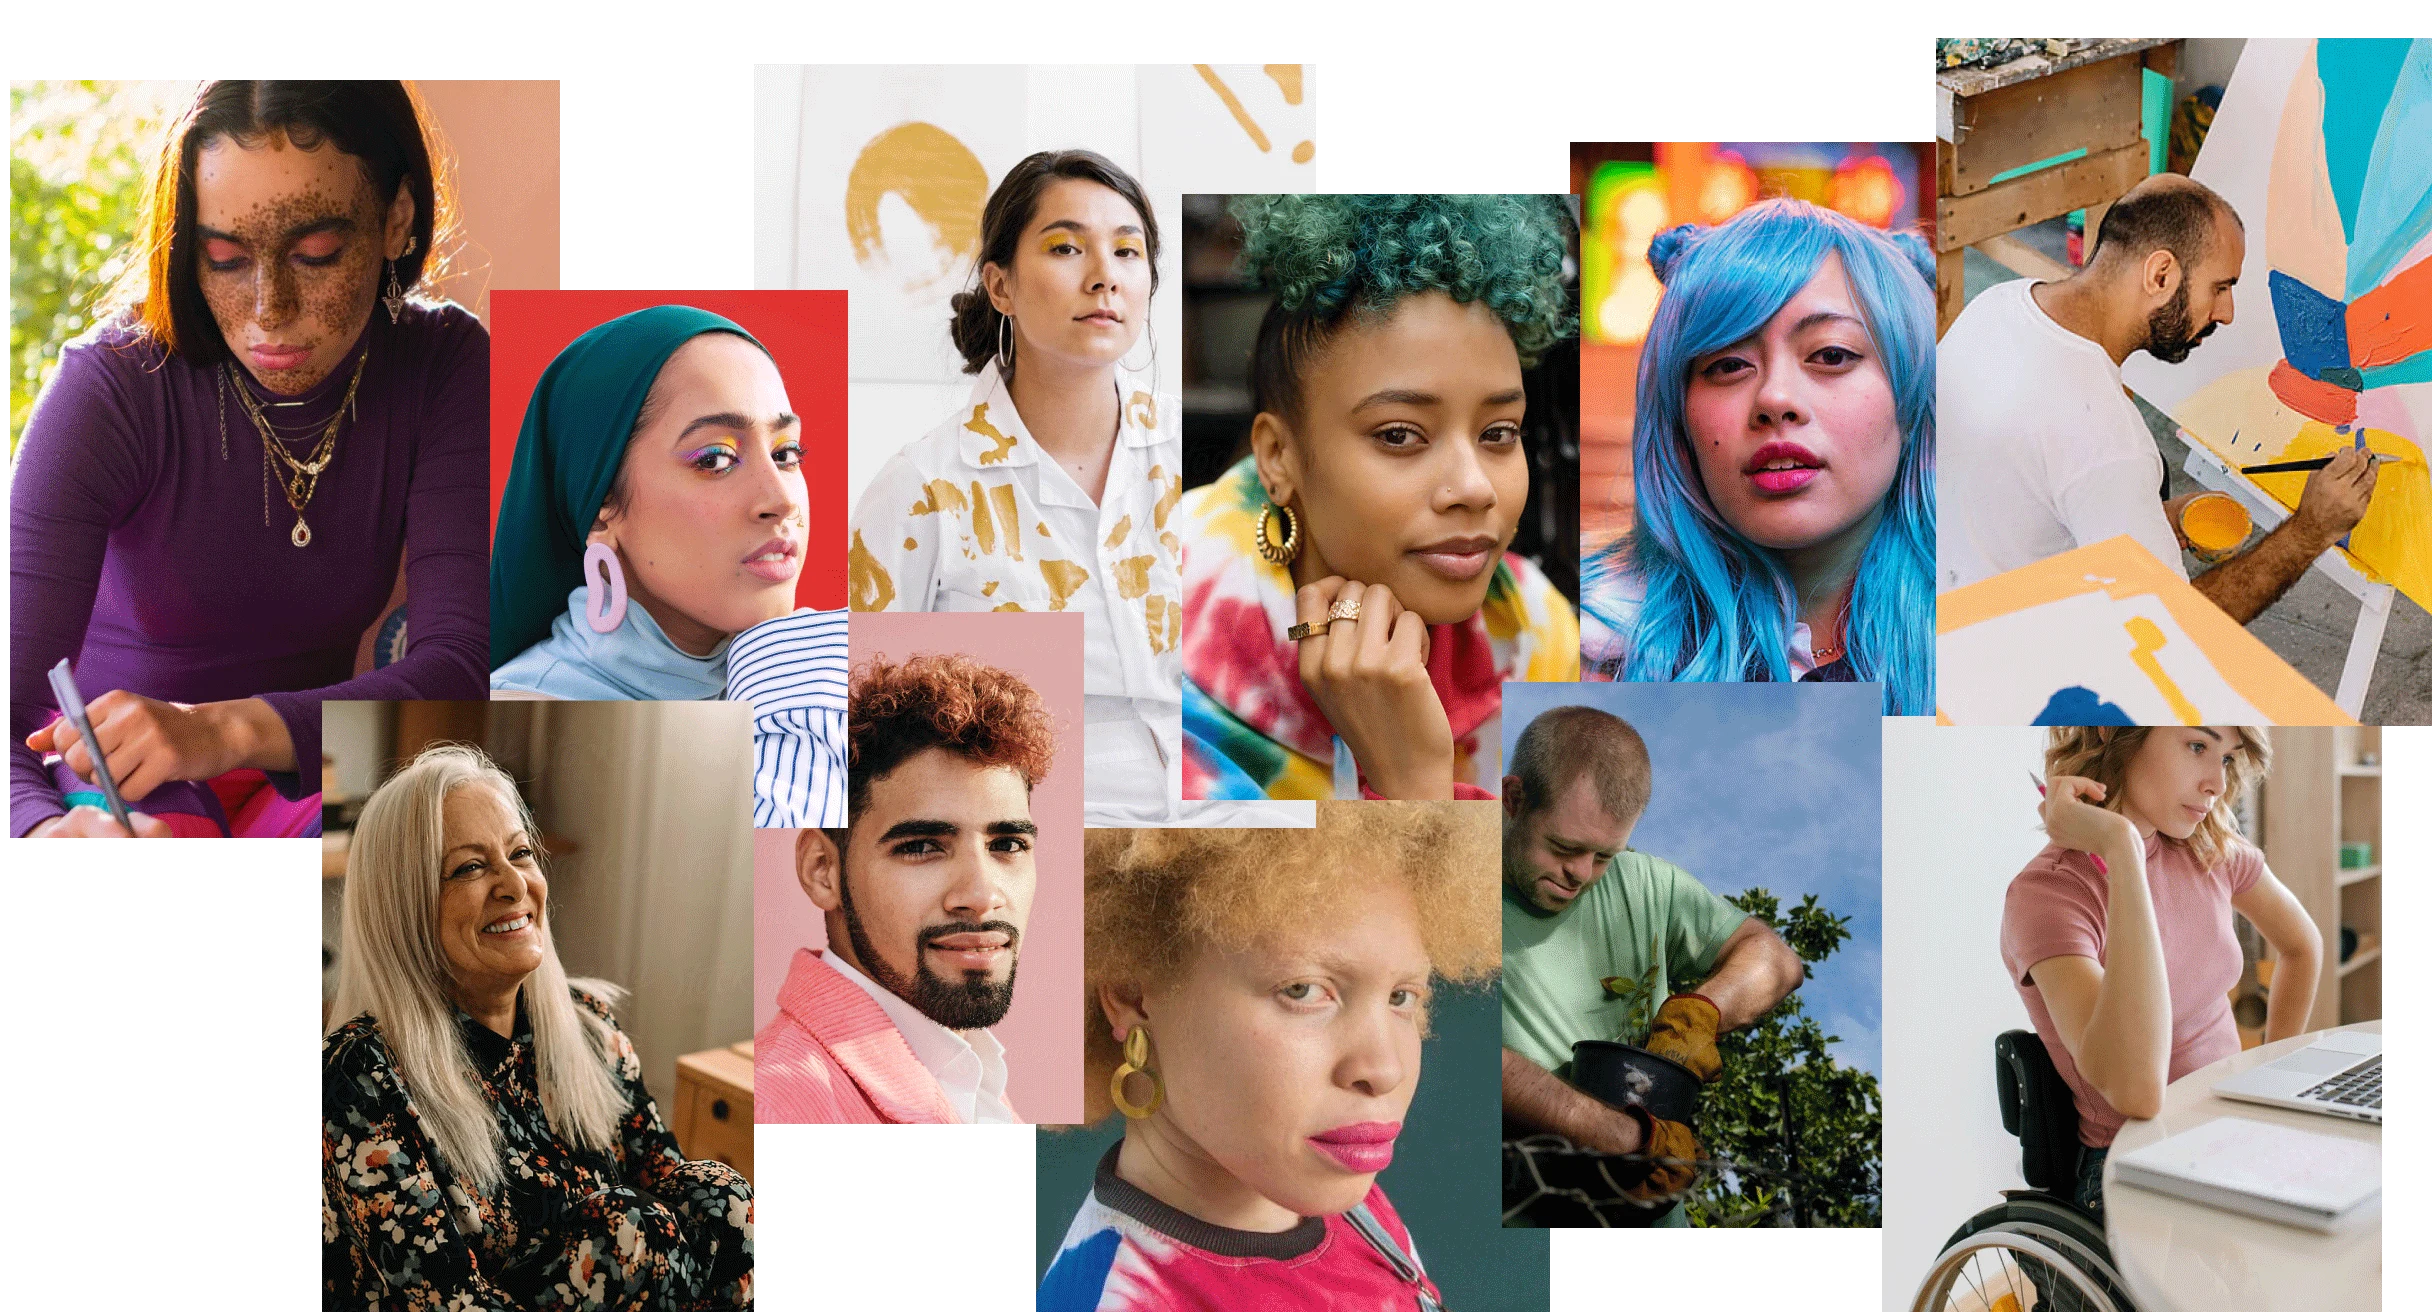 Eine Collage mit Menschen verschiedener Hautfarben, Ethnien, Geschlechter, Altersgruppen, mit und ohne Behinderung